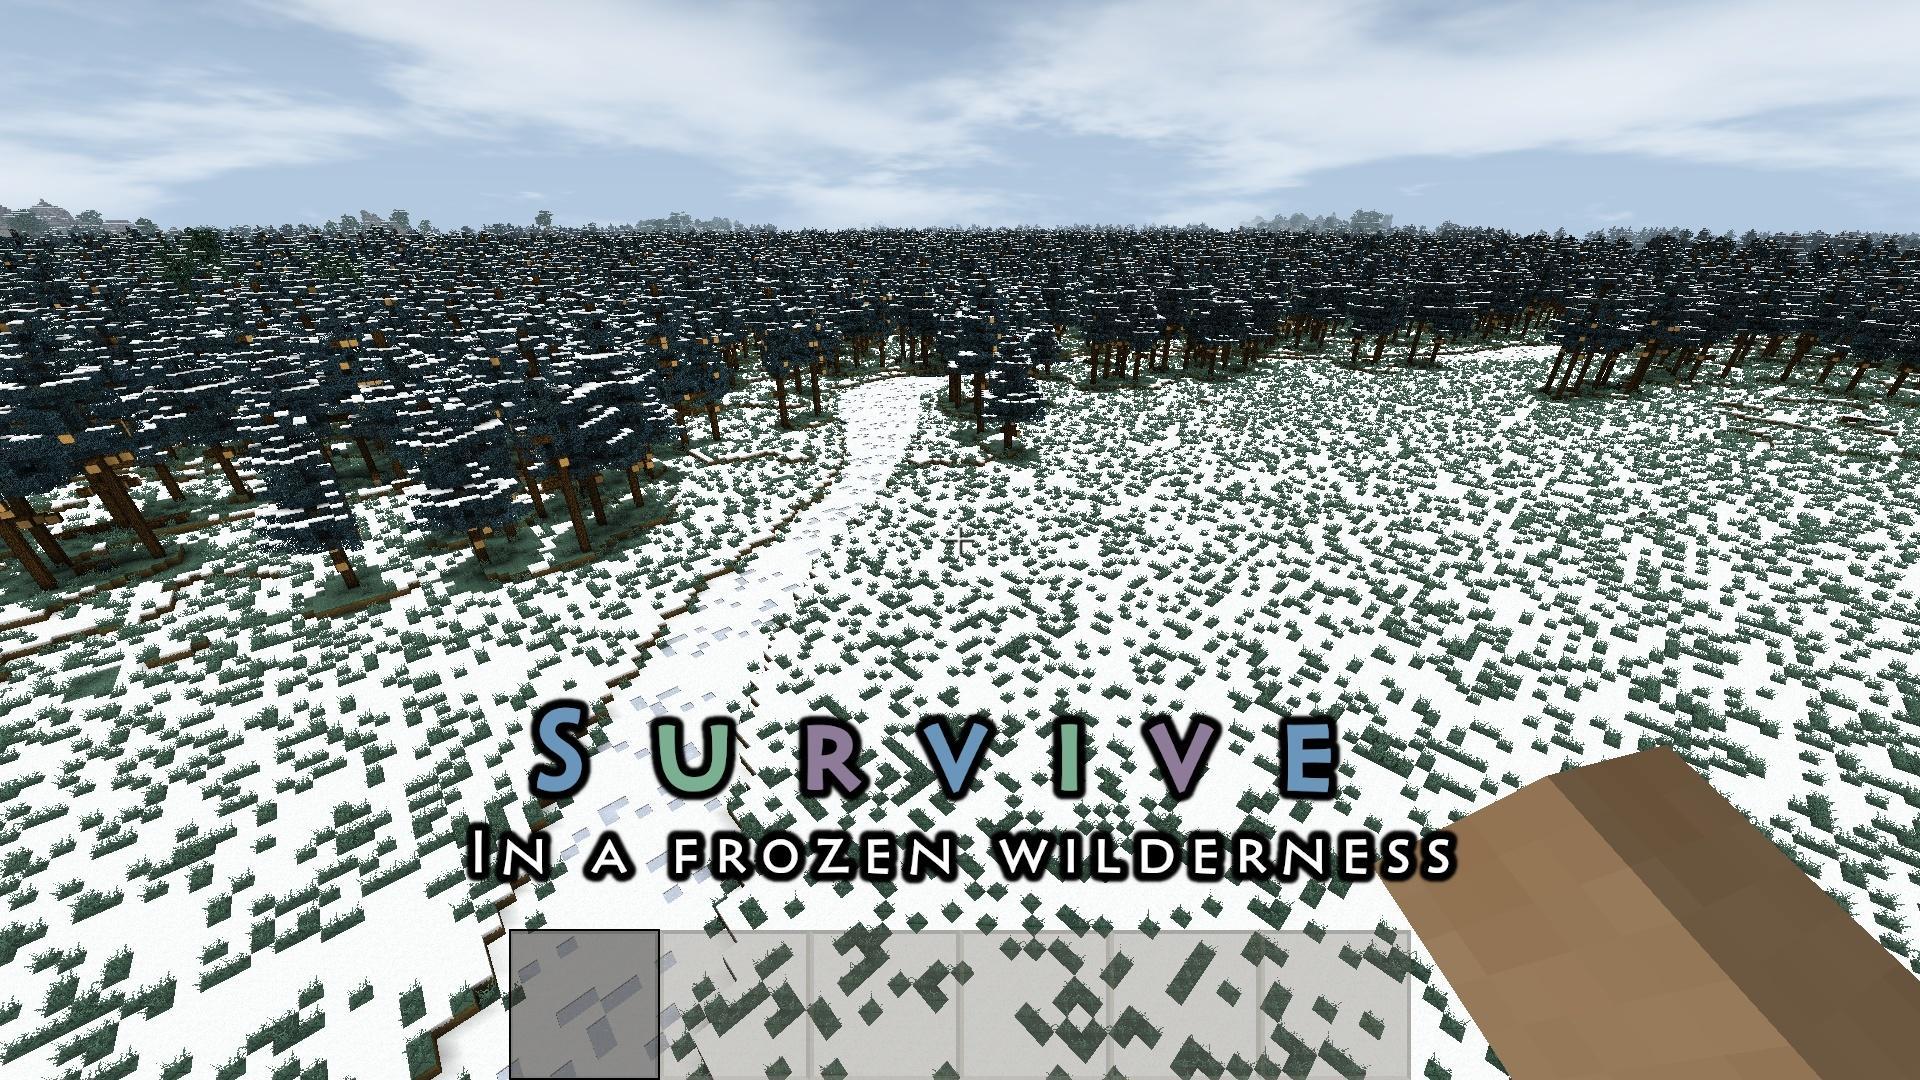 Survivalcraft 2 Mods Free Download